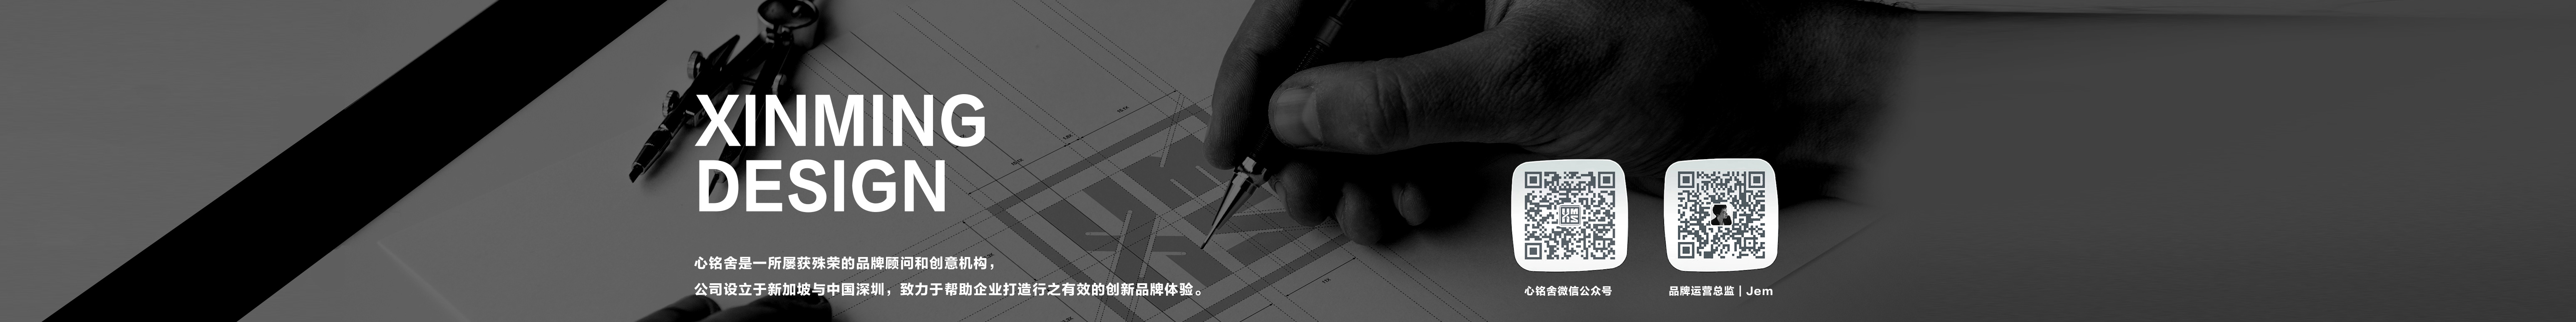 XINMING DESIGN 心铭舍's profile banner